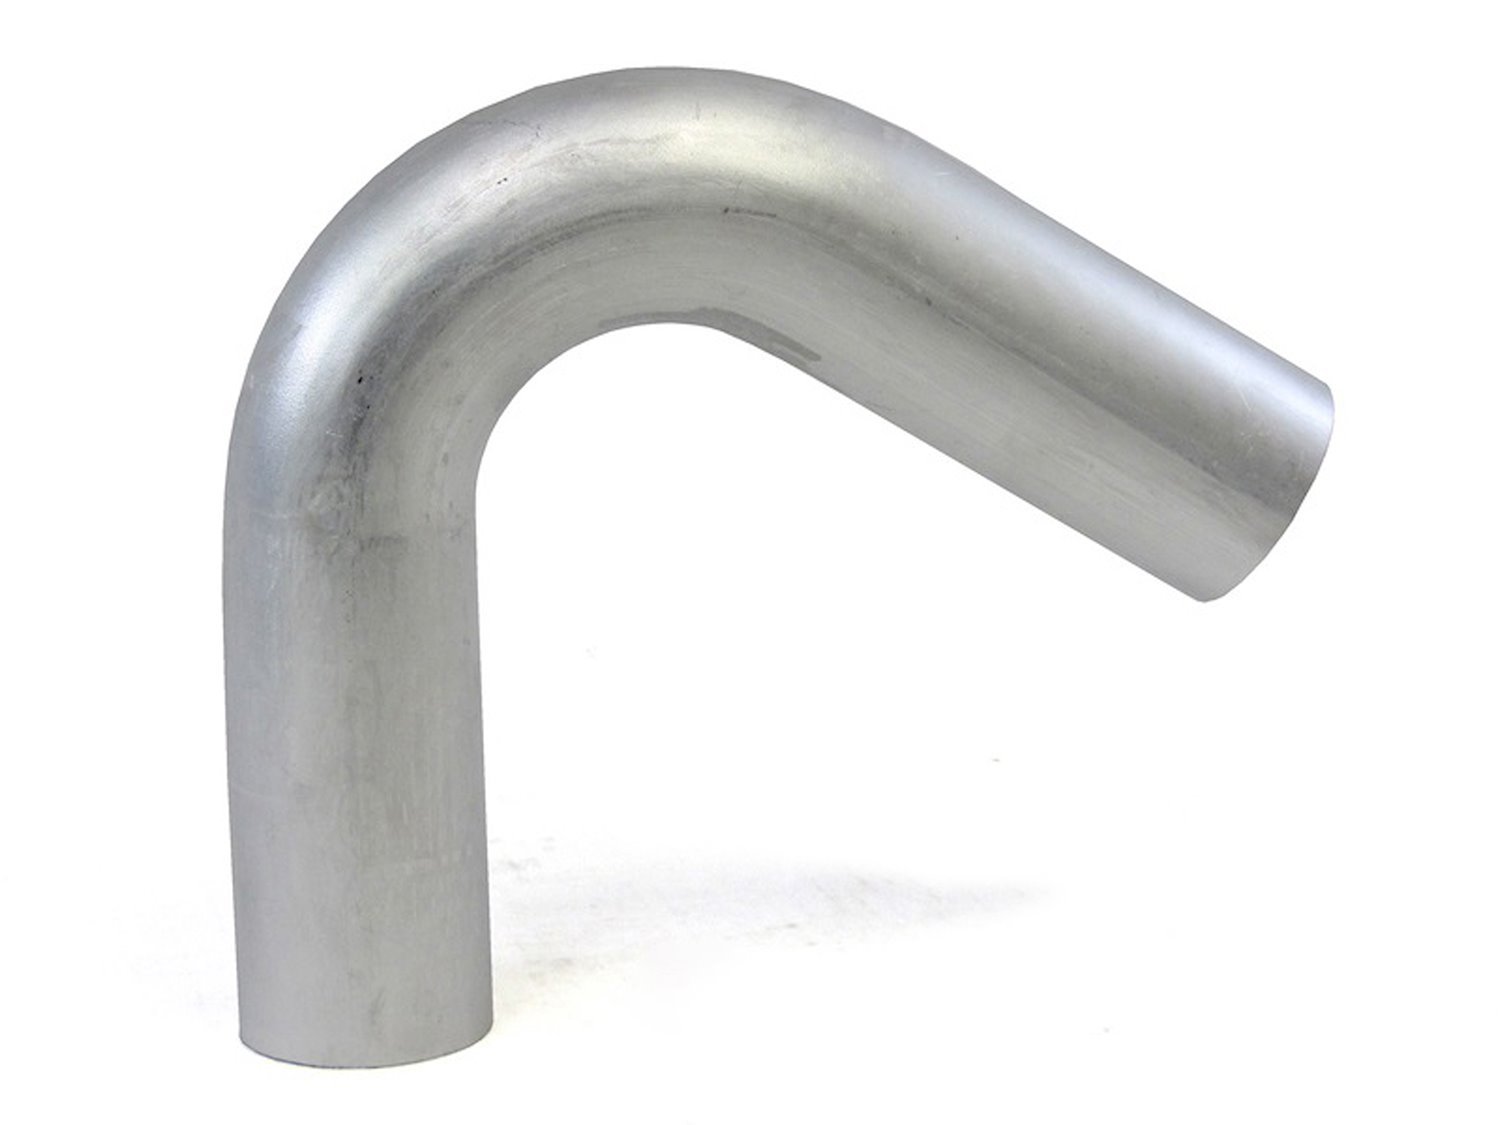 AT120-225-CLR-225 Aluminum Elbow Tube, 6061 Aluminum, 120-Degree Bend Elbow Tubing, 2-1/4 in. OD, Large Radius, 2-1/4 in. CLR